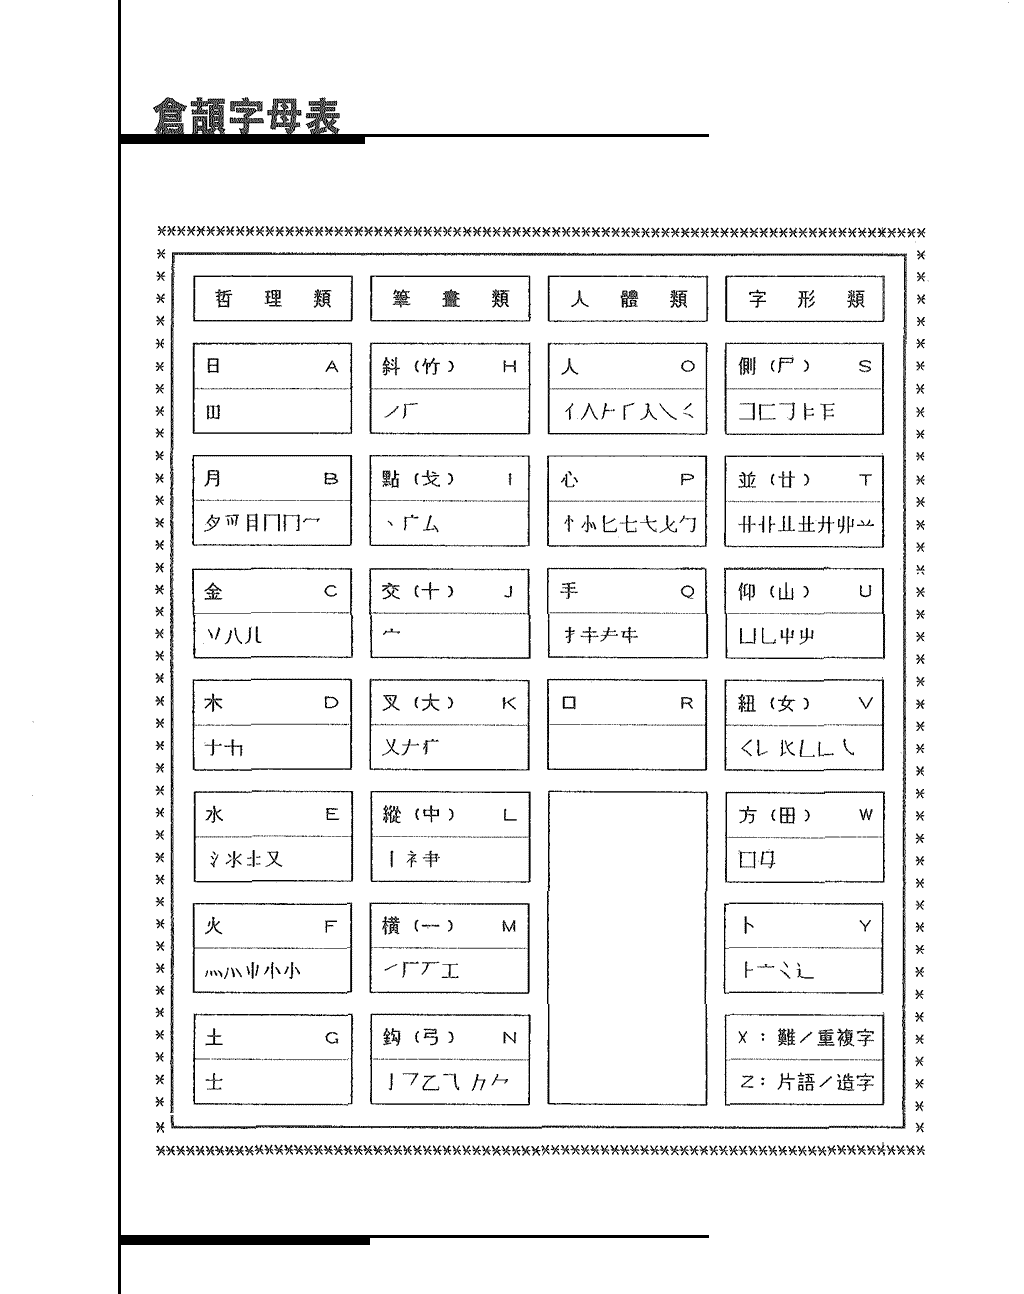 倉頡字母表、倉頡輸入法取碼流程